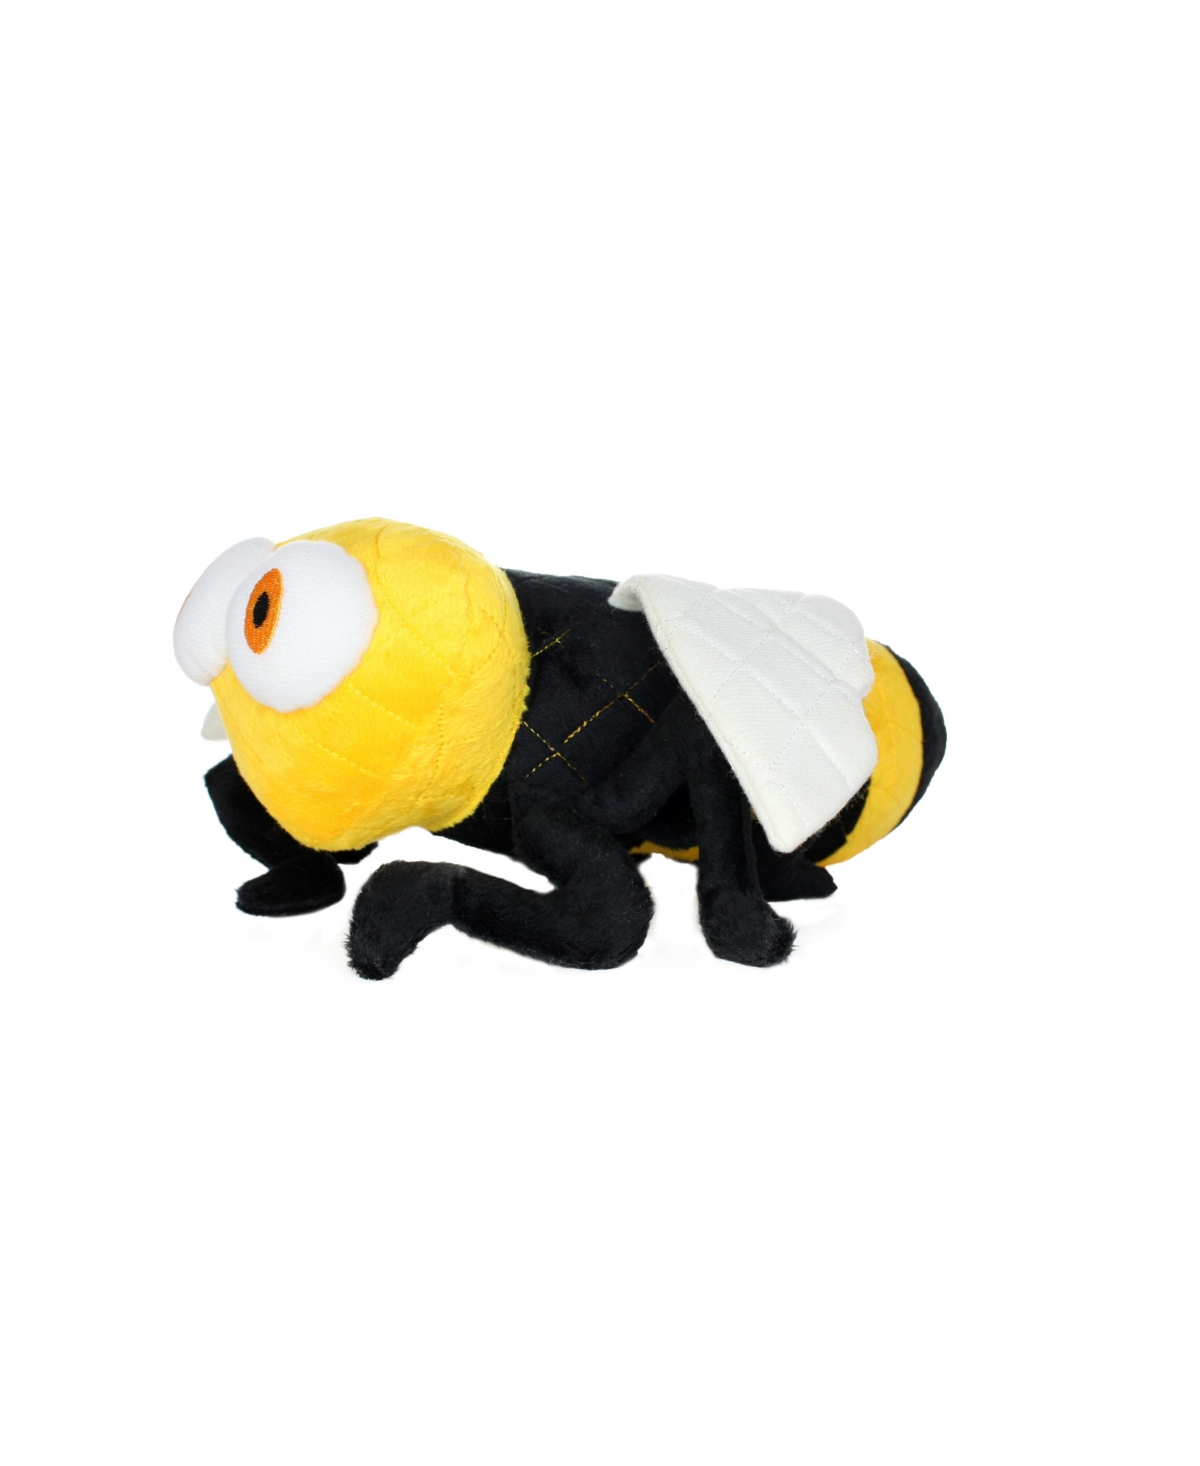 Bug Bee, Dog Toy - Yellow